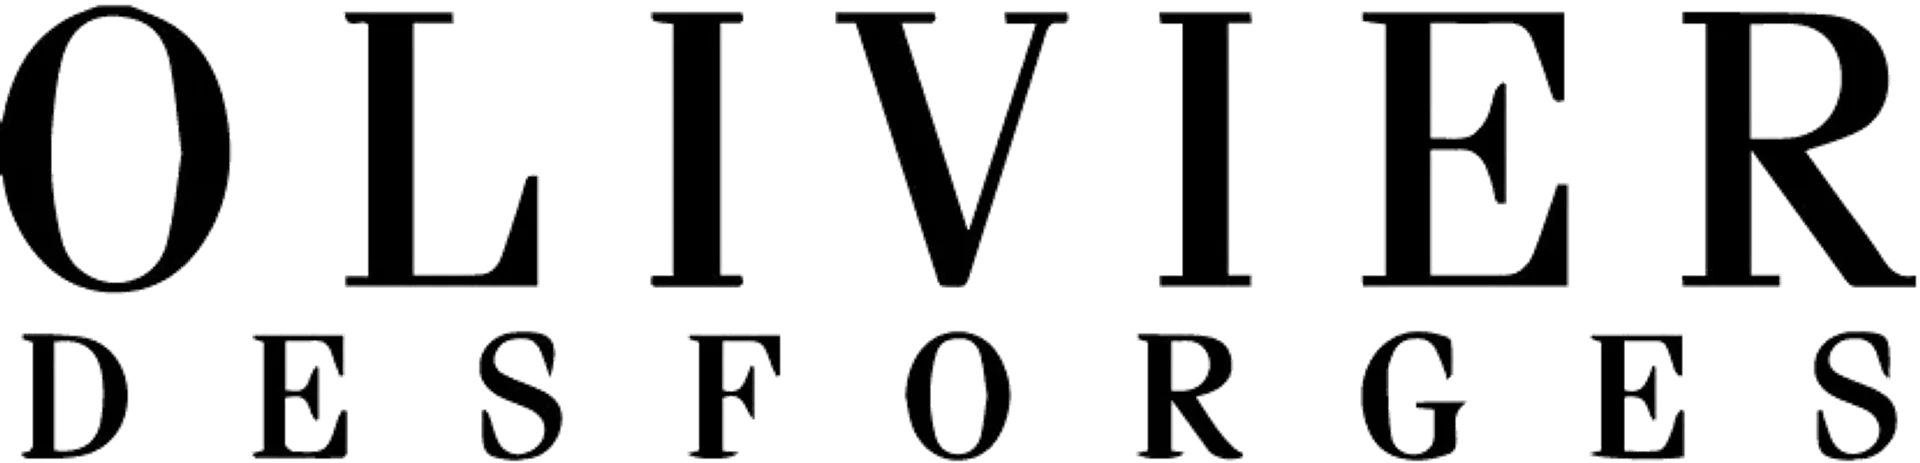 OLIVIER DESFORGES logo